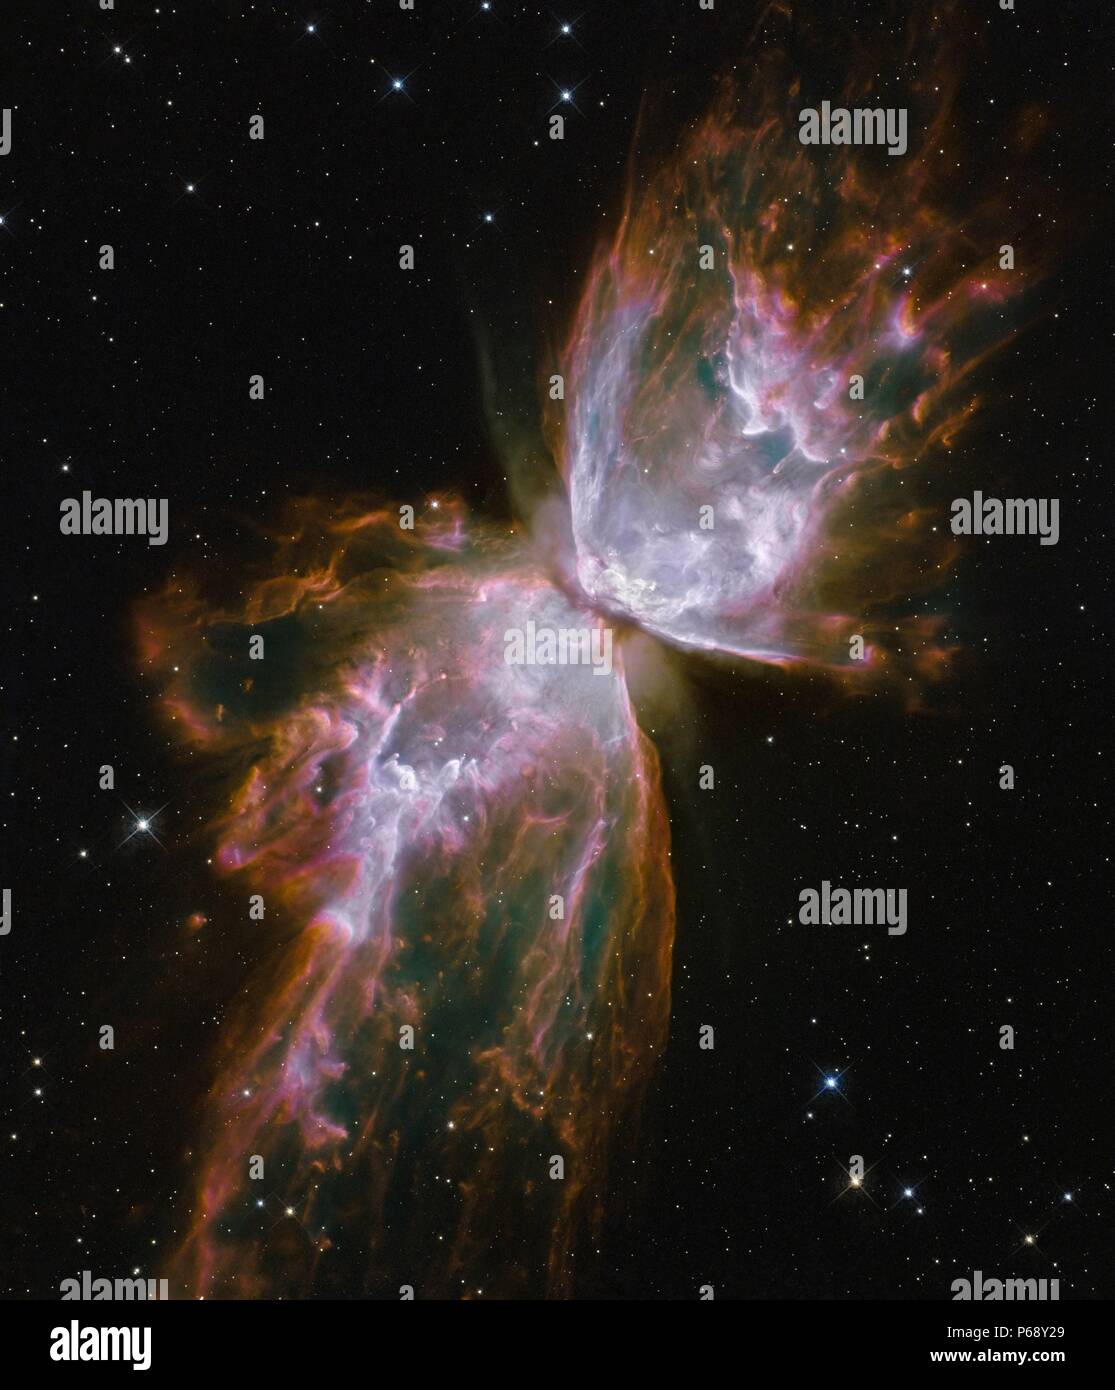 Emerge en forma de mariposa de desaparición estelar en la nebulosa planetaria NGC 6302. Foto tomada por el telescopio Hubble. Fecha 2009 Foto de stock